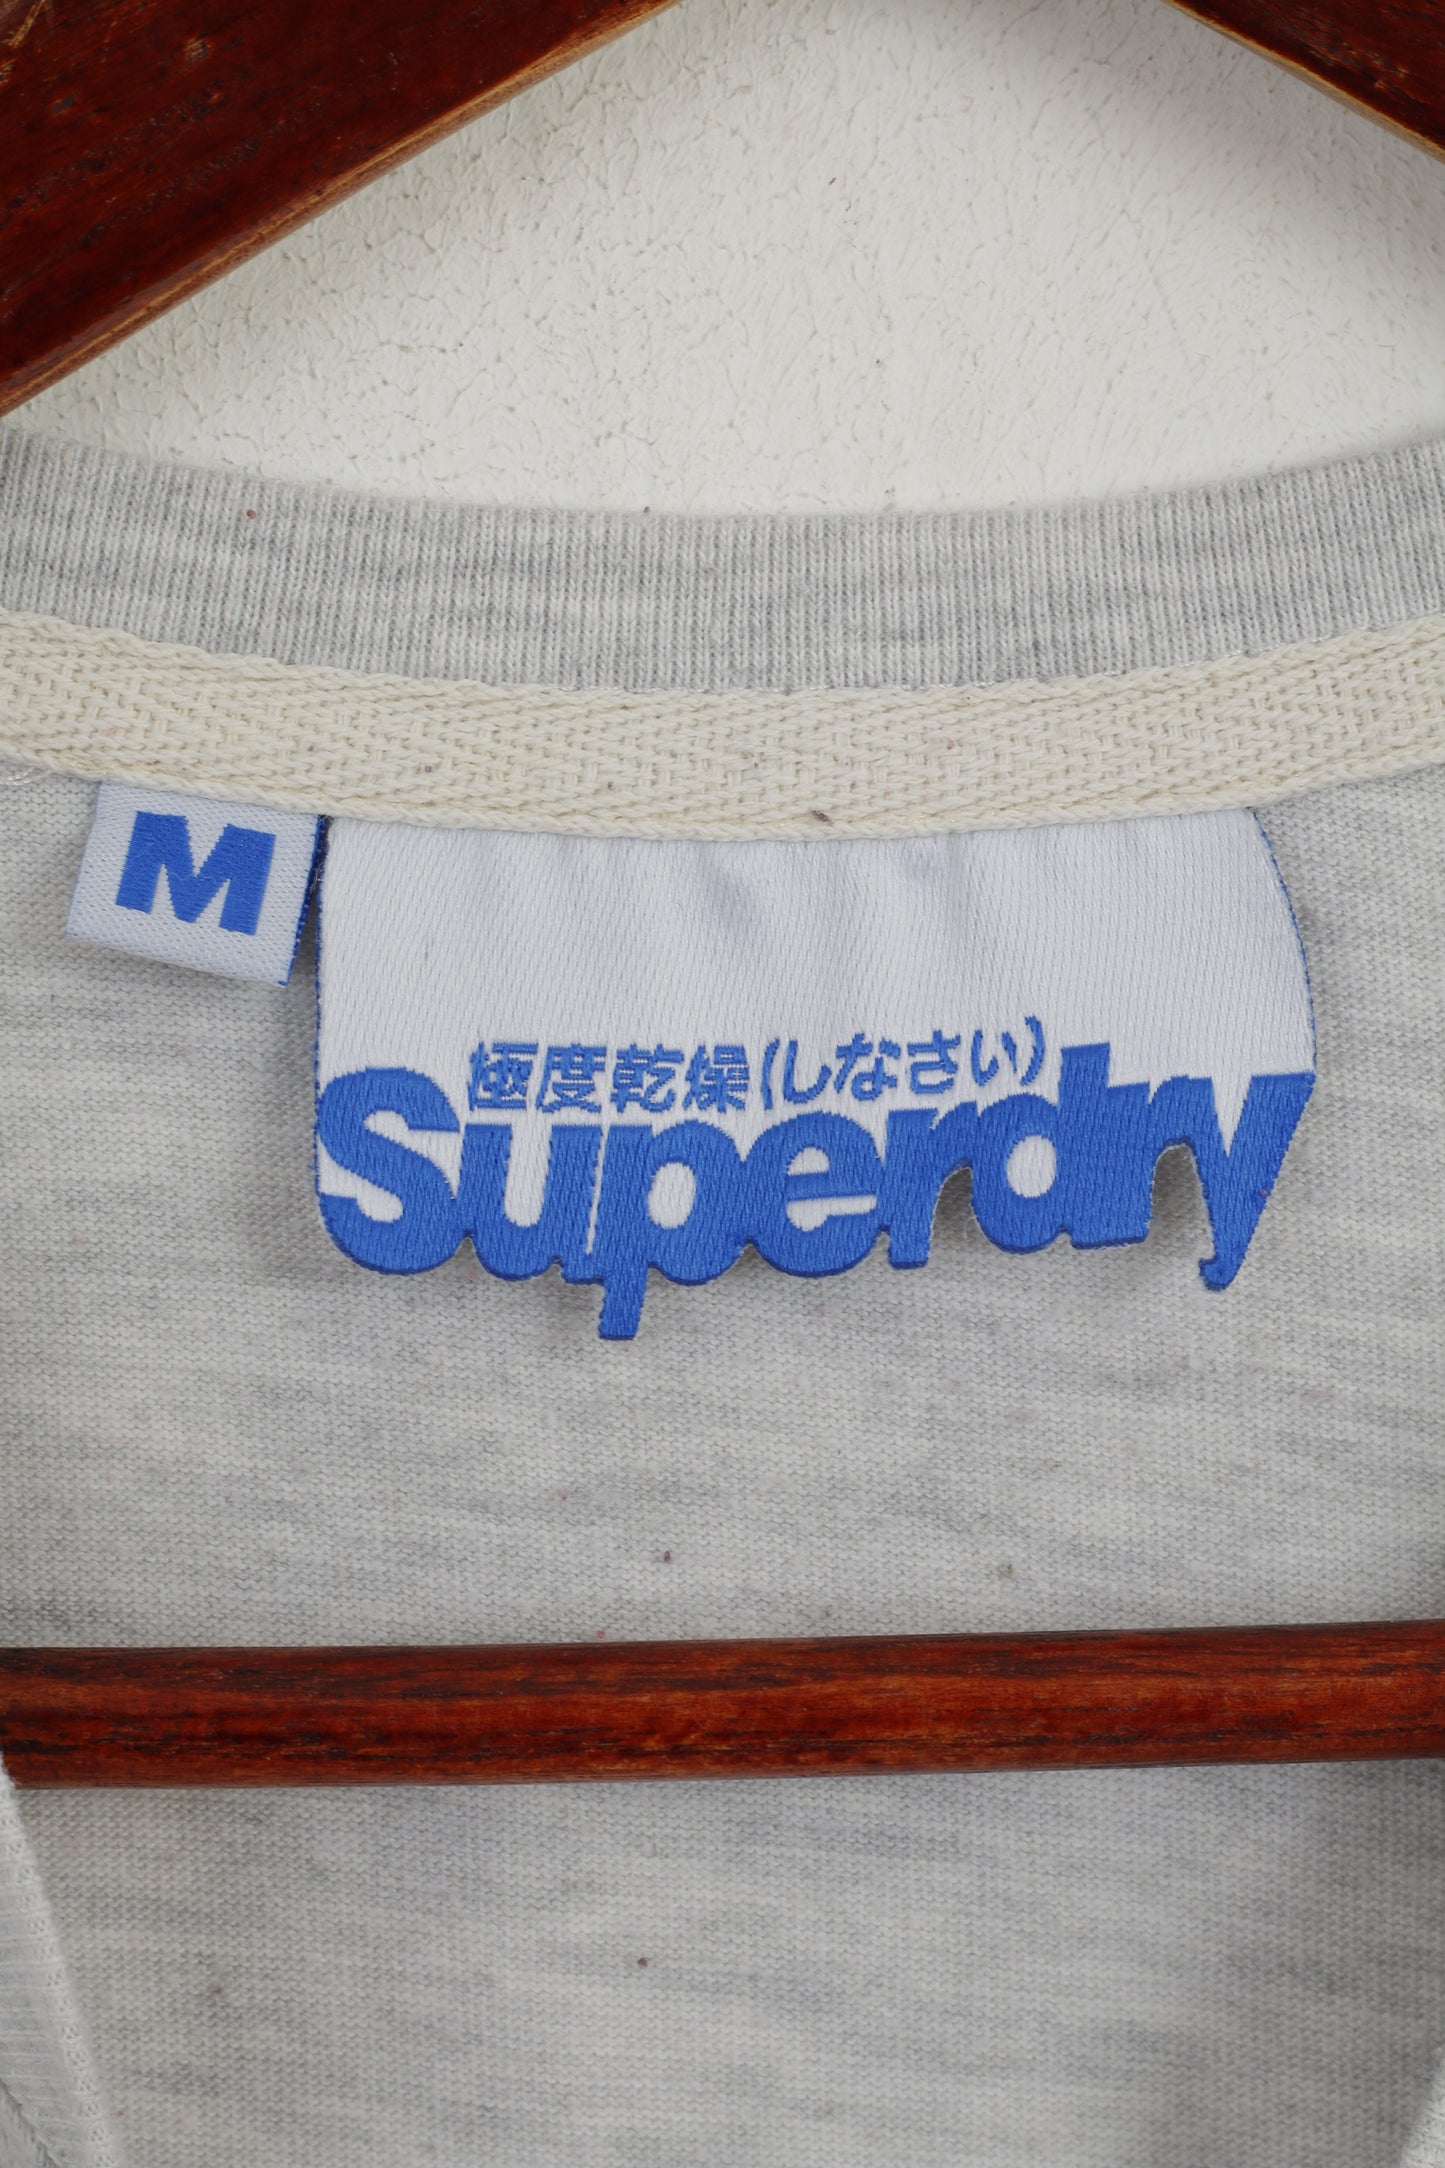 Camicia da uomo M Superdry Maglietta sportiva a maniche corte con girocollo in cotone grigio sbiadito